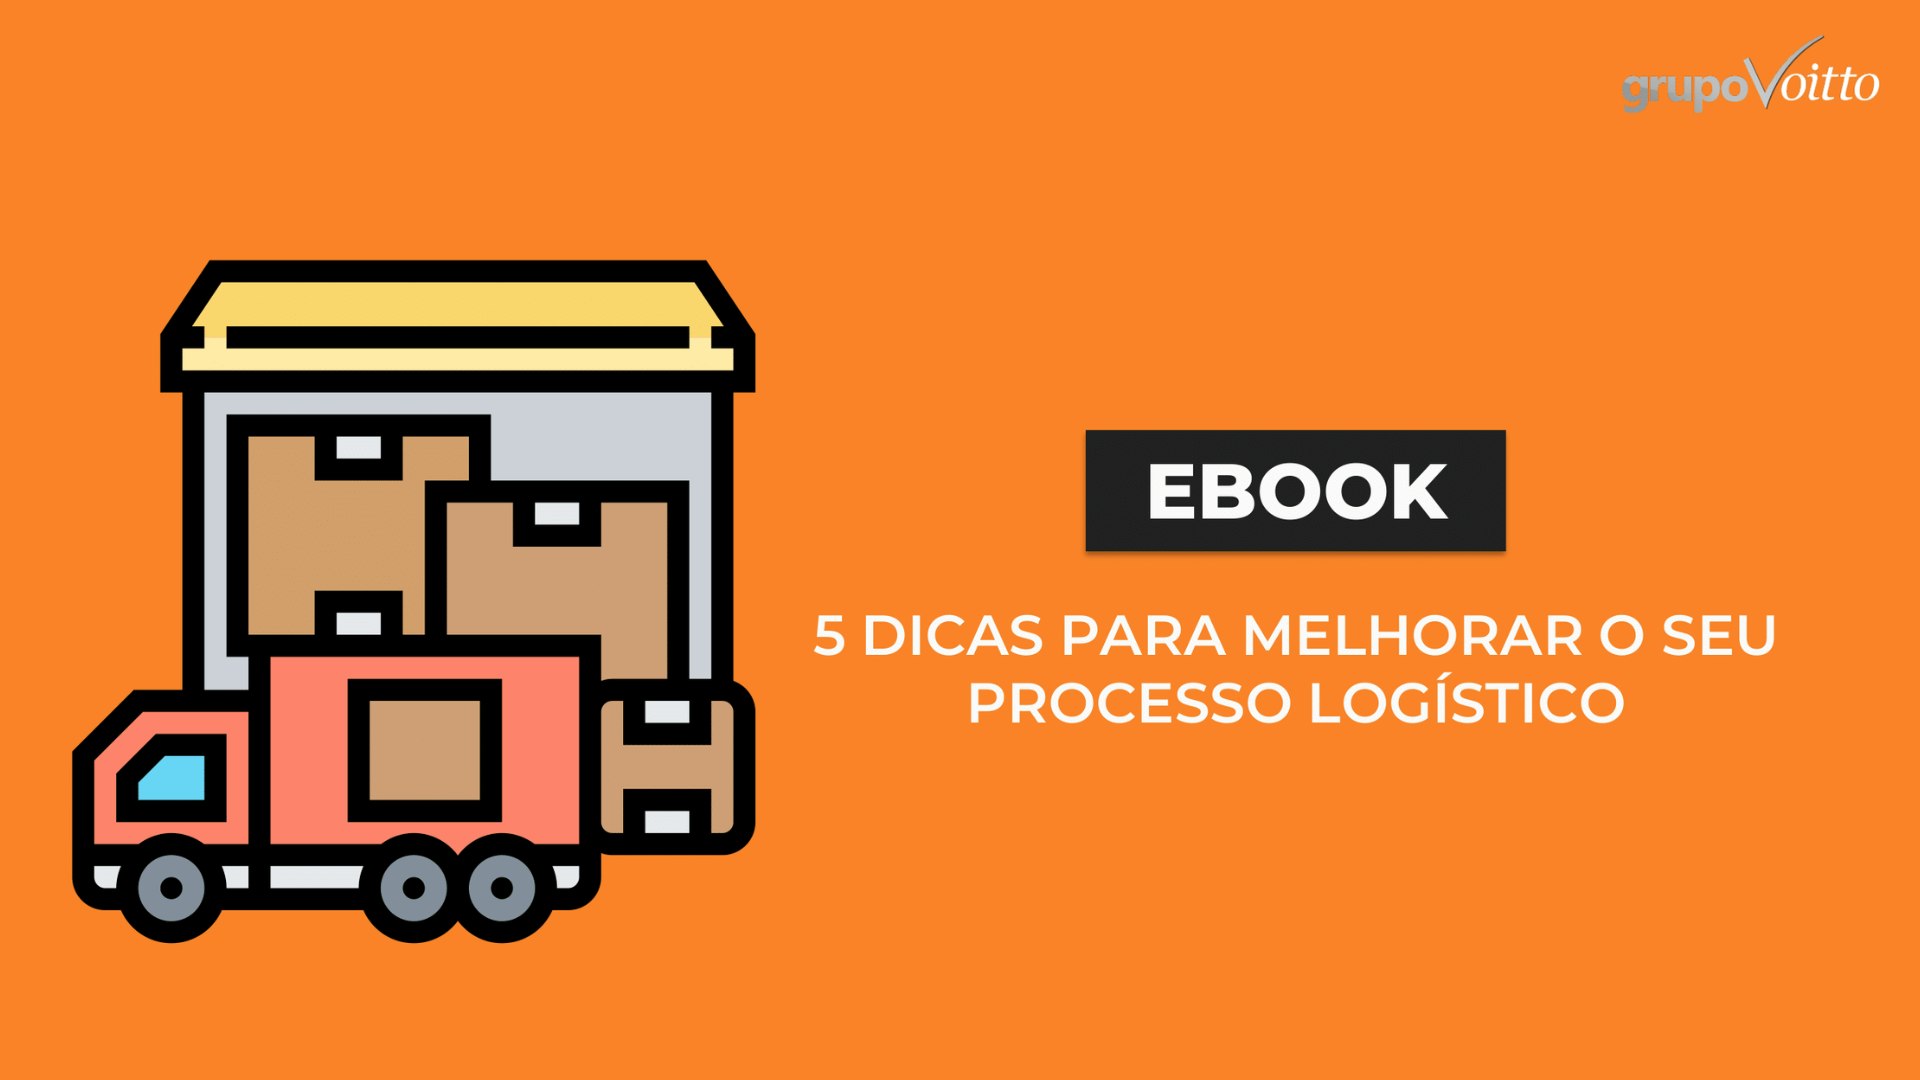 [eBook] 5 dicas para melhorar seu processo logístico